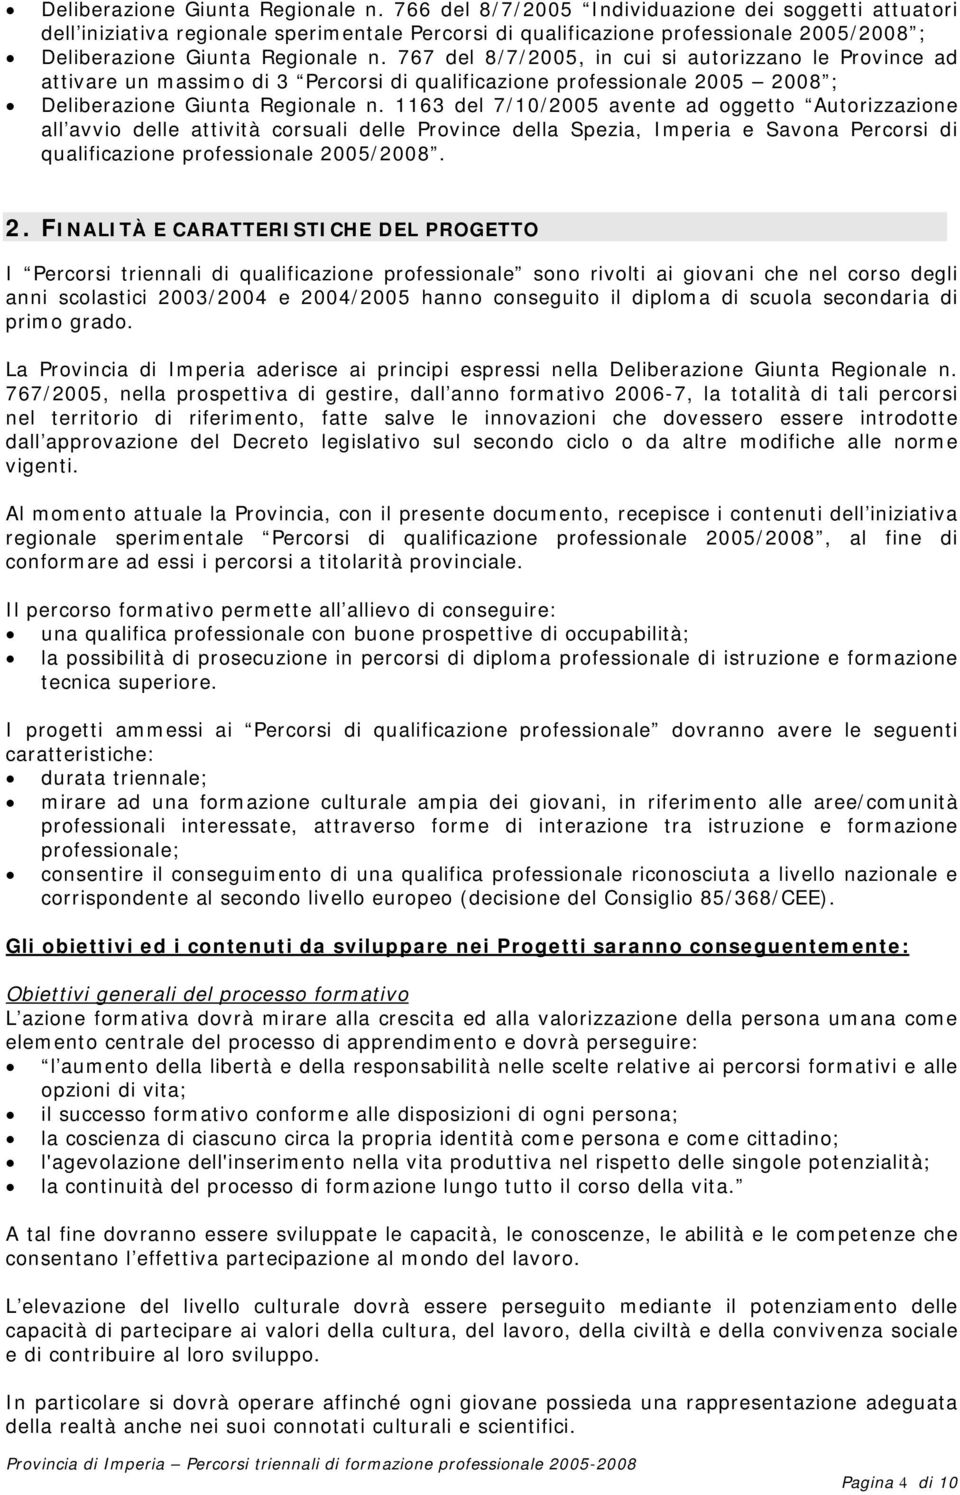 ad attivare un massimo di 3 Percorsi di qualificazione professionale 2005 2008 ;  1163 del 7/10/2005 avente ad oggetto Autorizzazione all avvio delle attività corsuali delle Province della Spezia,